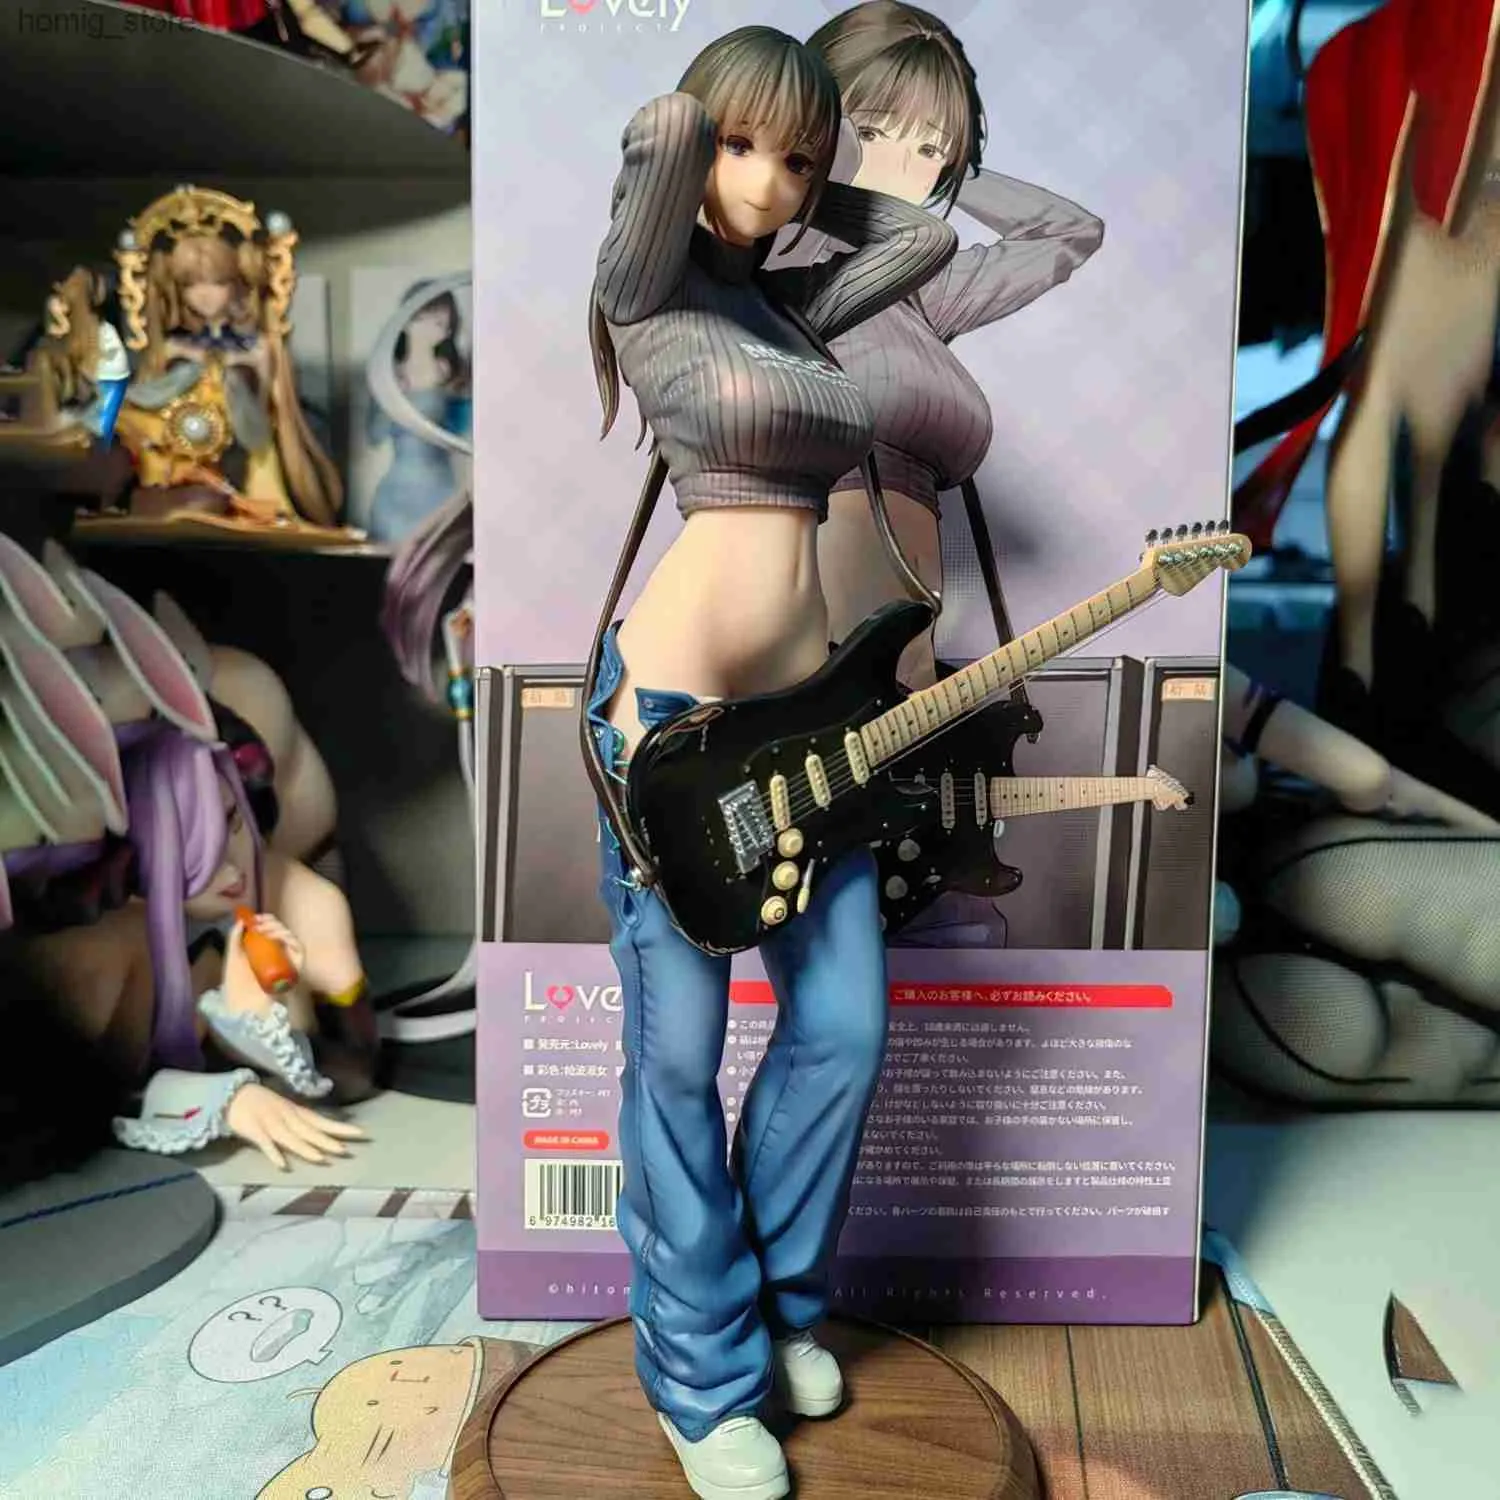 Action Toy Figures 200 mm Figure d'anime guitare meimei sœurs de guitare mei sexy fille pvc figure figure jouet adultes collection modèle modèle de poupée cadeaux y240415